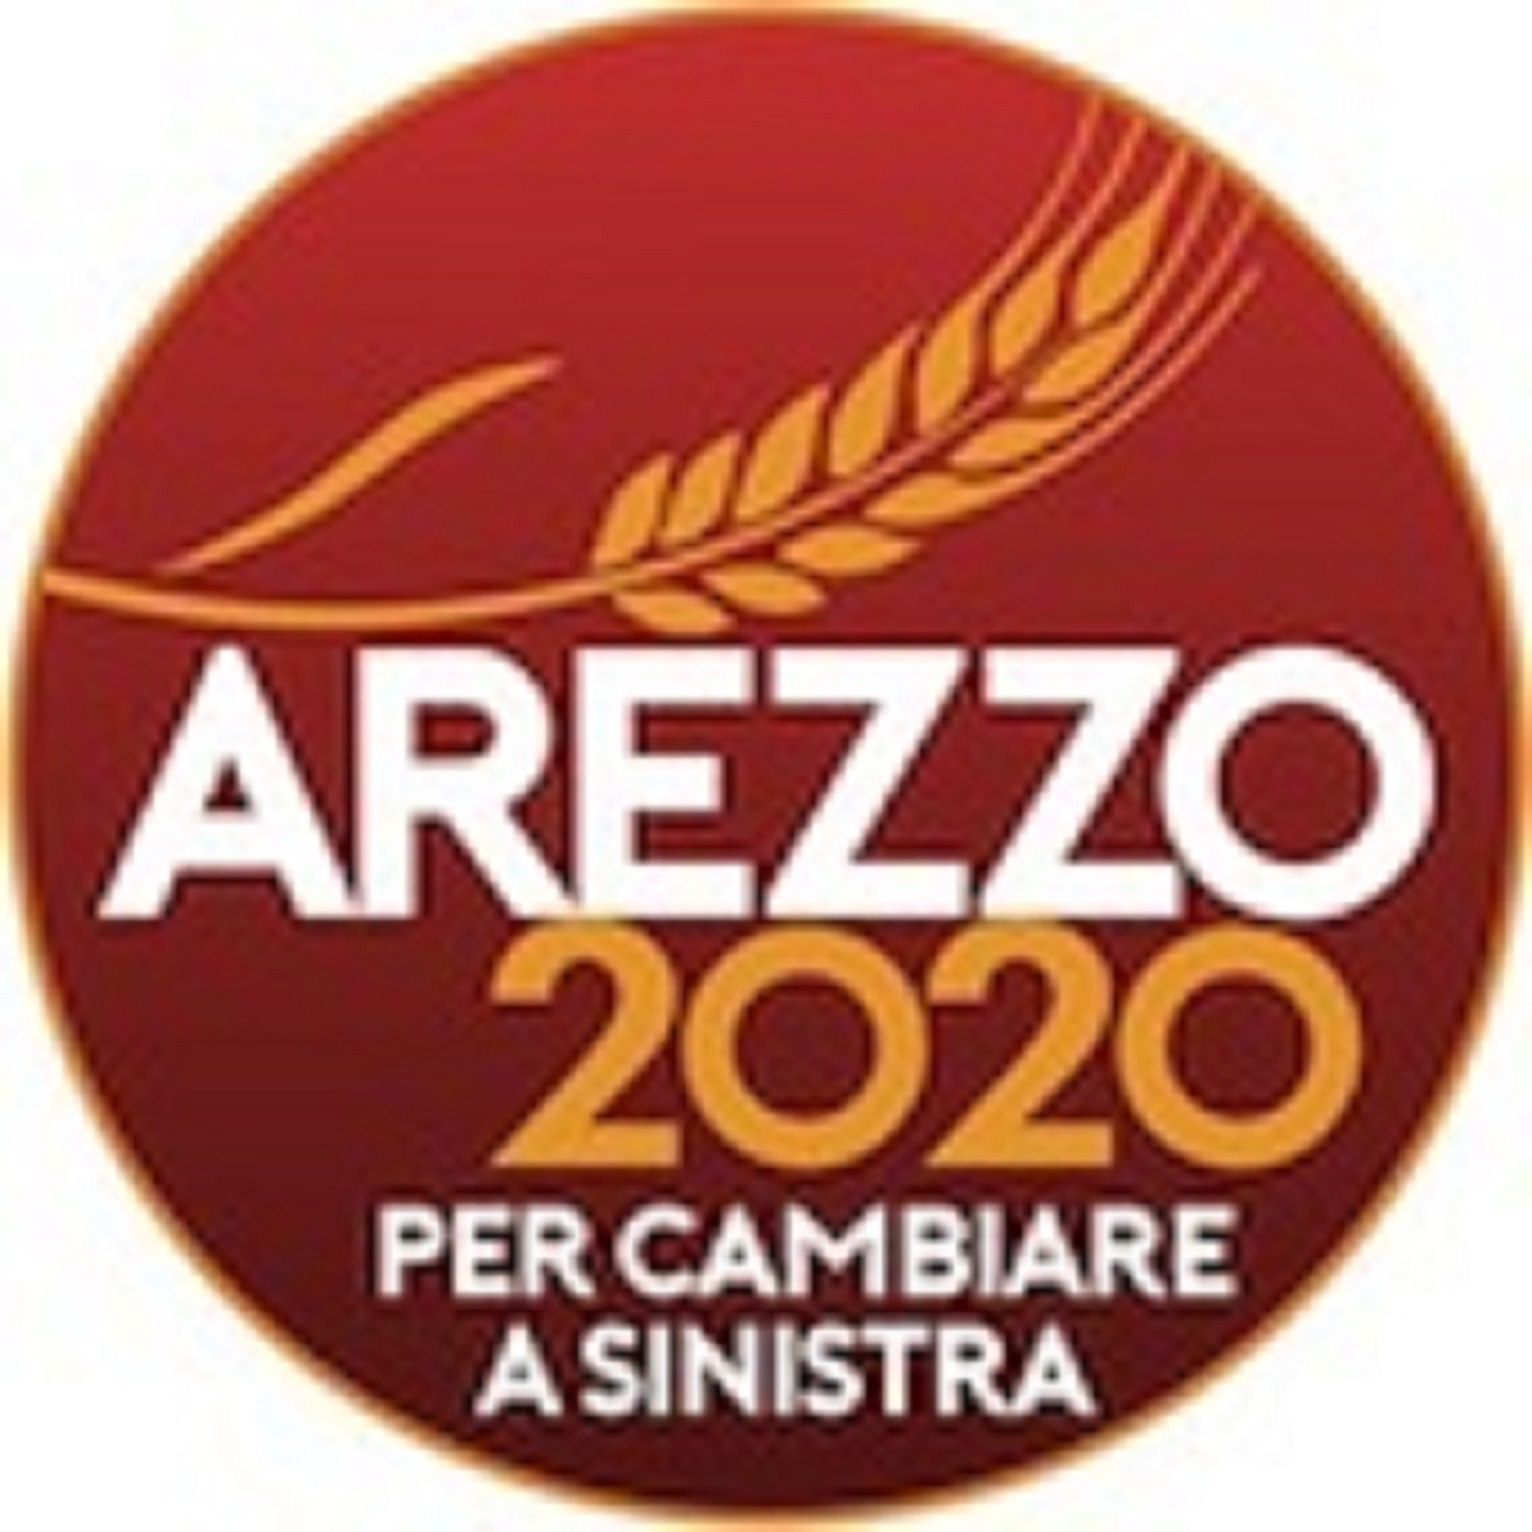 Arezzo 2020 aderisce alla Carta d’intenti del Comitato Pionta. “Lo facciano tutte le liste se hanno davvero a cuore il parco”